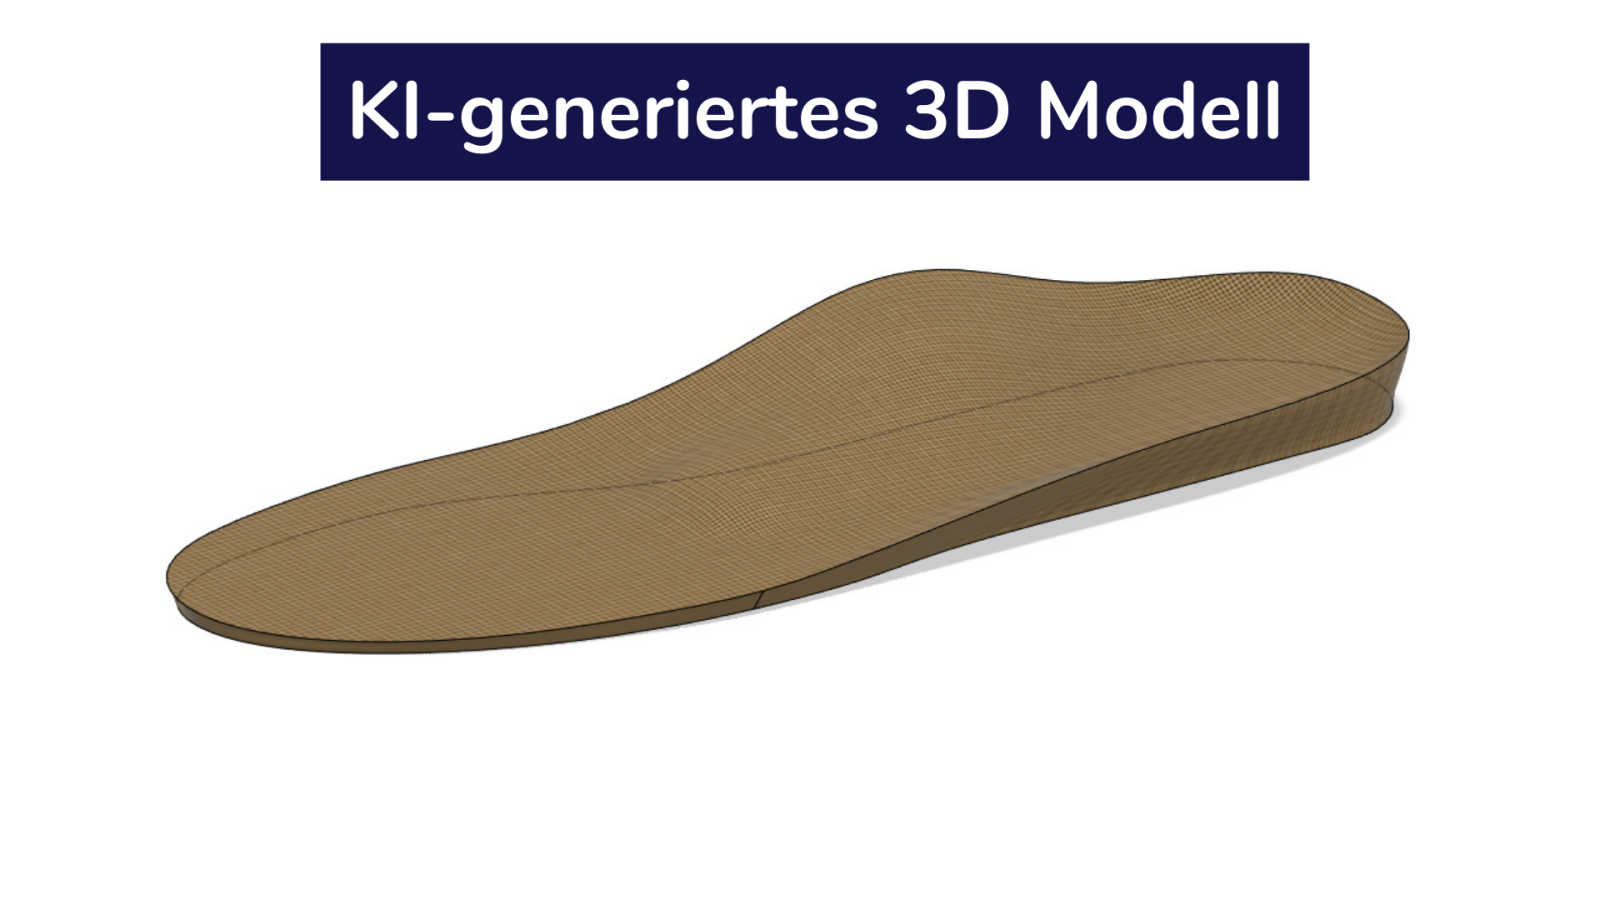 KI-generiertes 3D-Modell der KI-generiertes 3D Modell der orthopädische Schuheinlagen